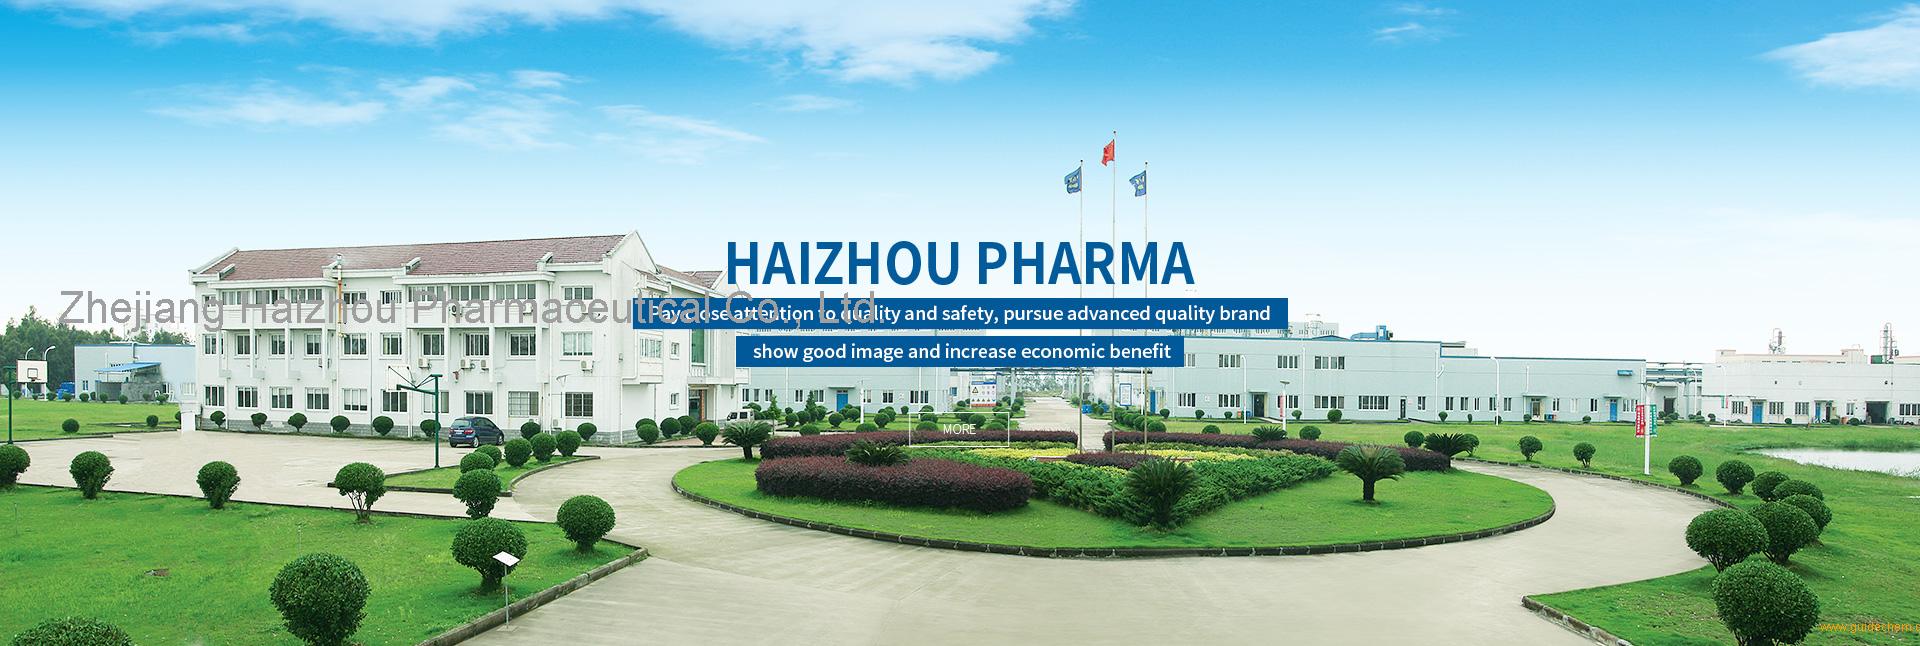 Zhejiang Haizhou Pharmaceutical Co., Ltd.